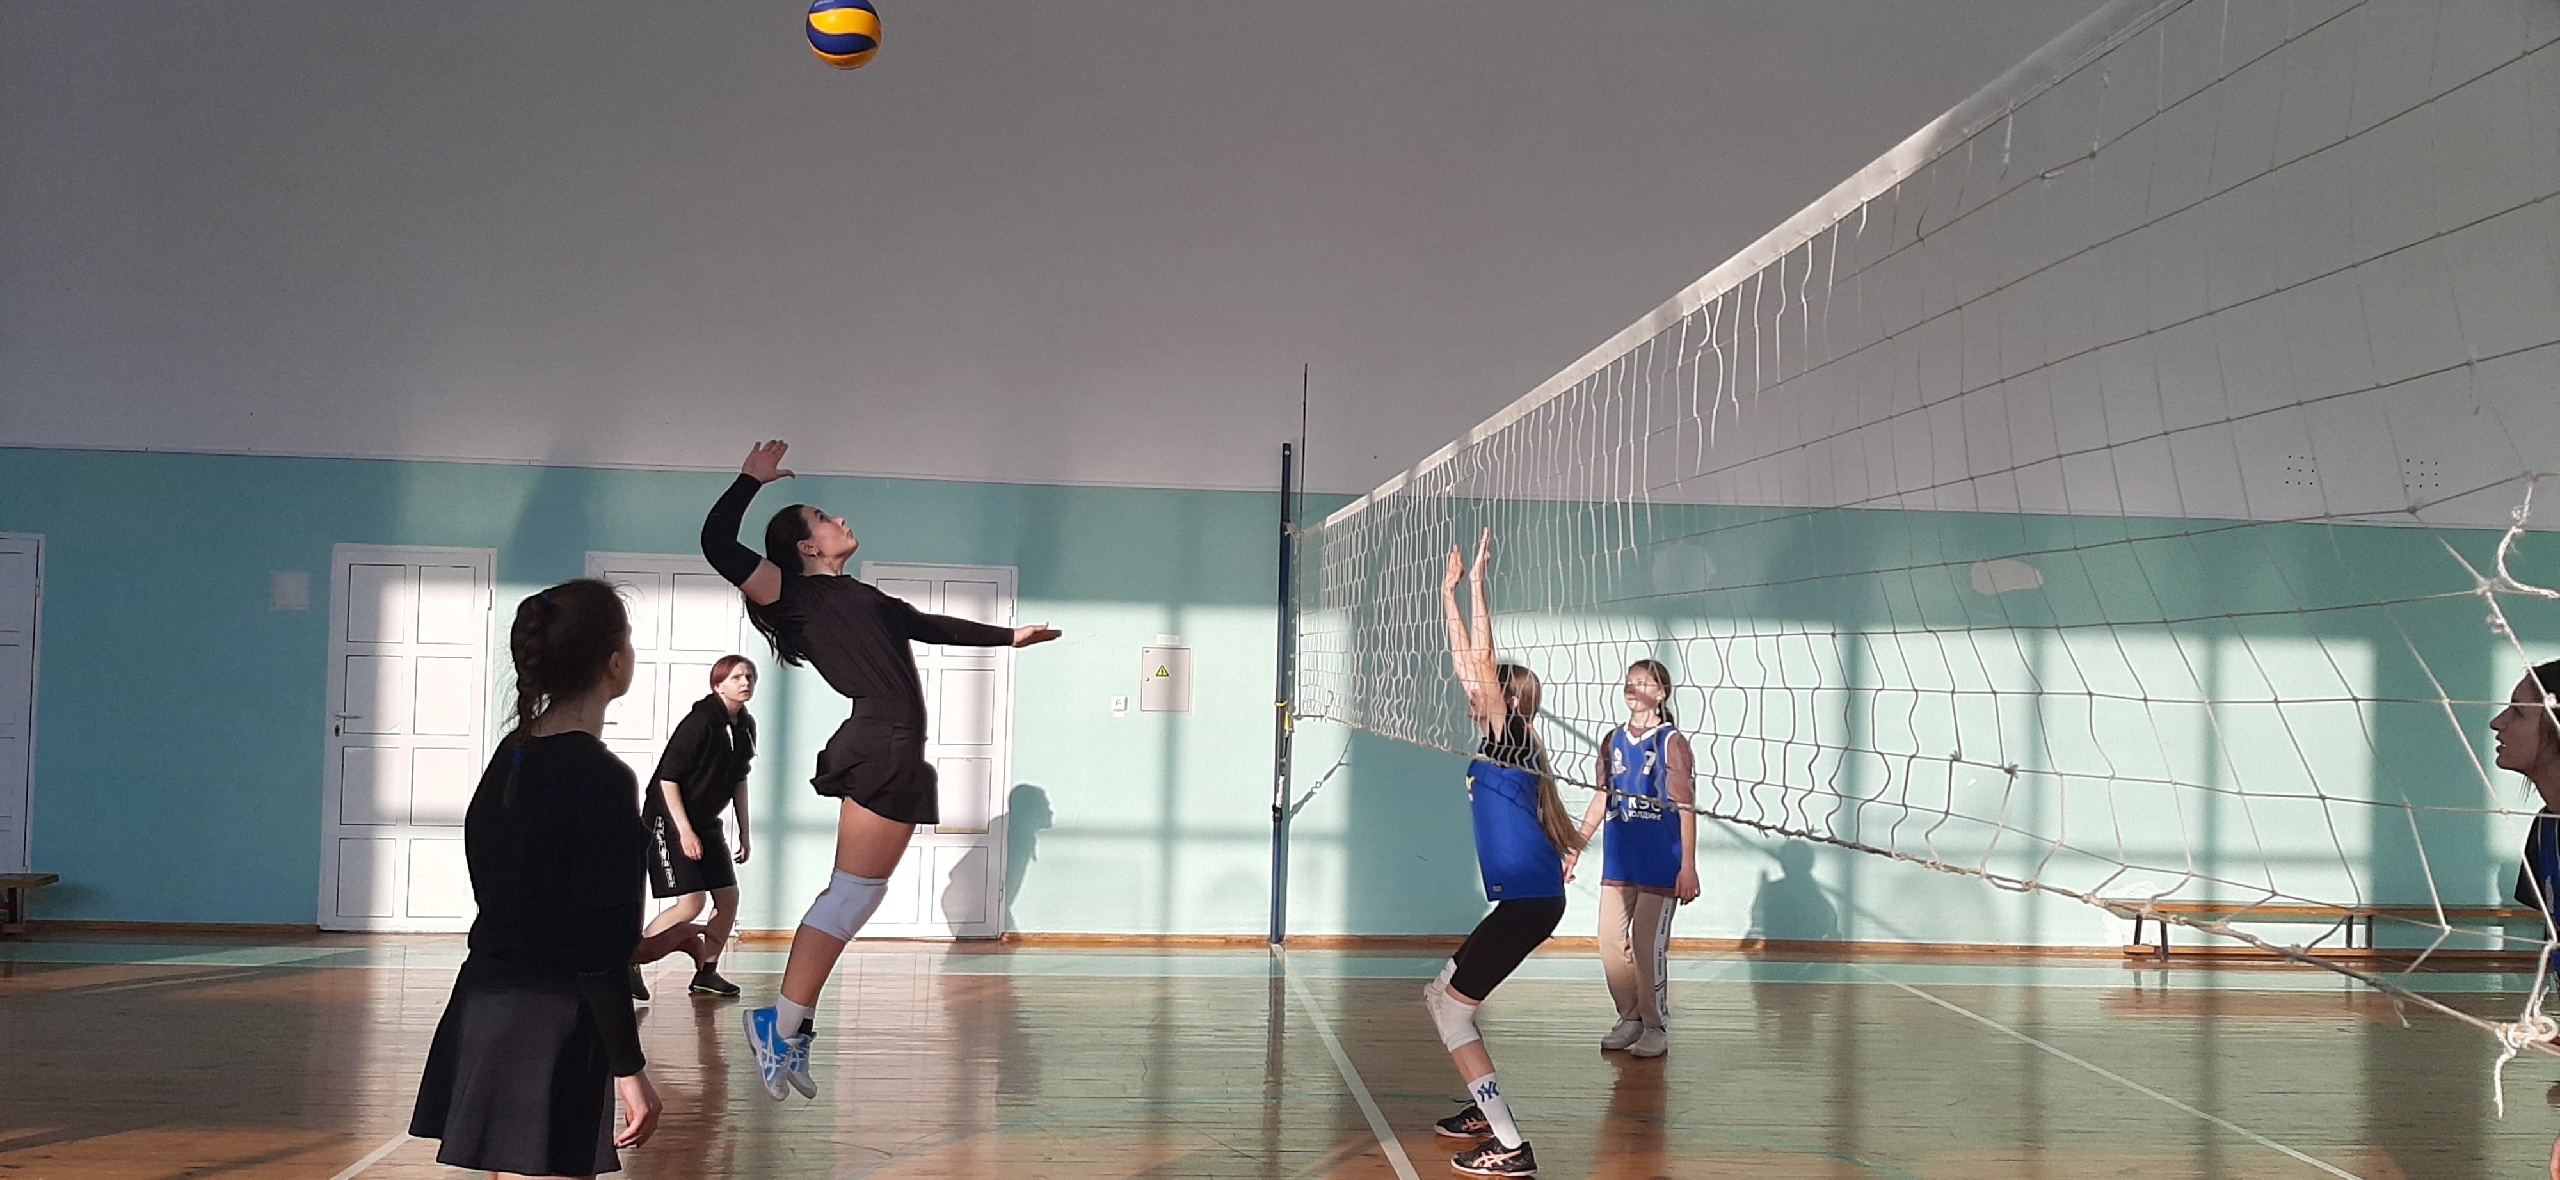  В Саранске состоялись финальные соревнования по волейболу среди девушек в рамках Спартакиады муниципальных общеобразовательных организаций